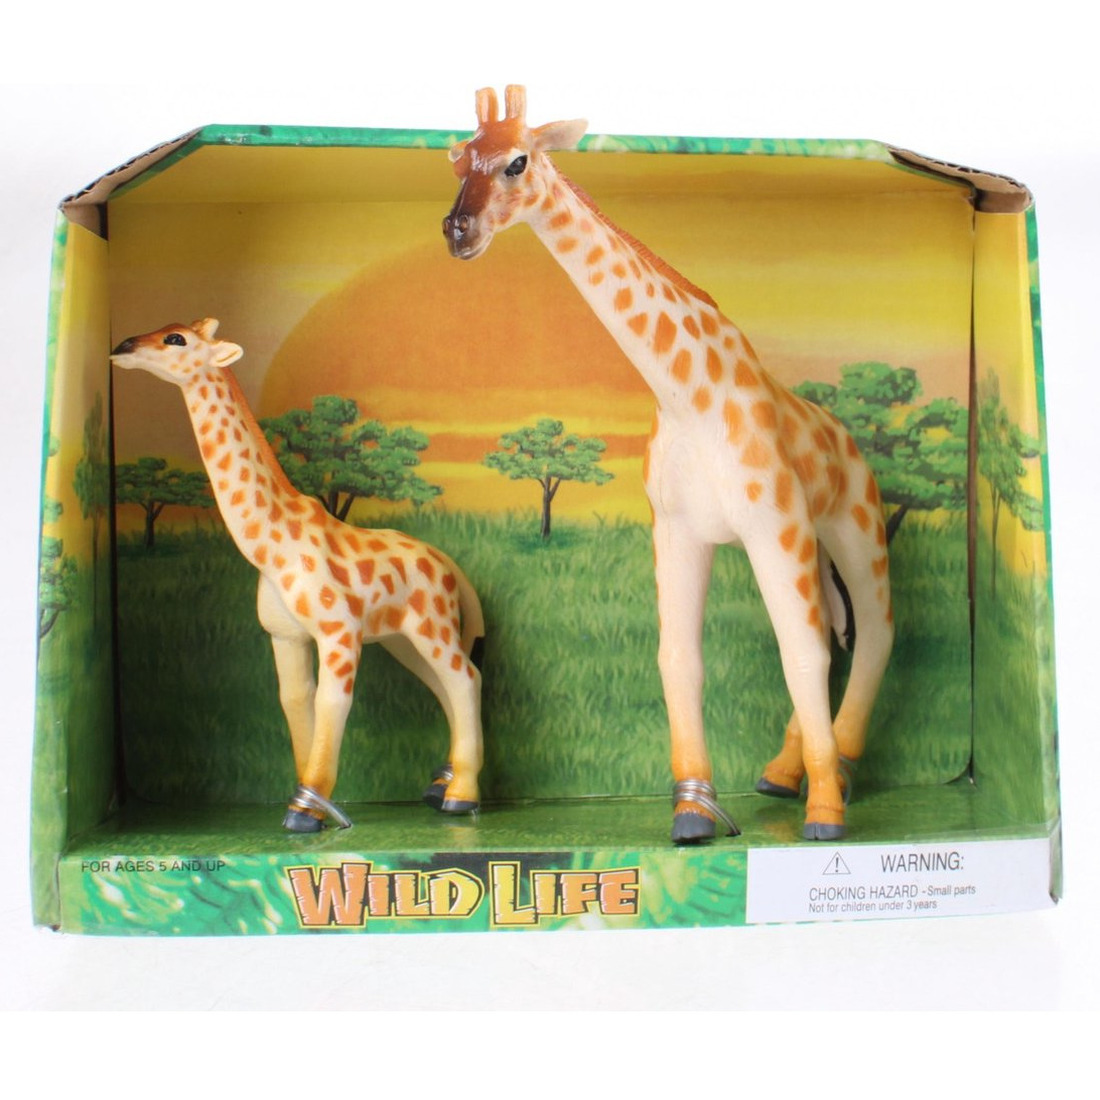 Plastic giraffe met kalf speelgoed voor kinderen